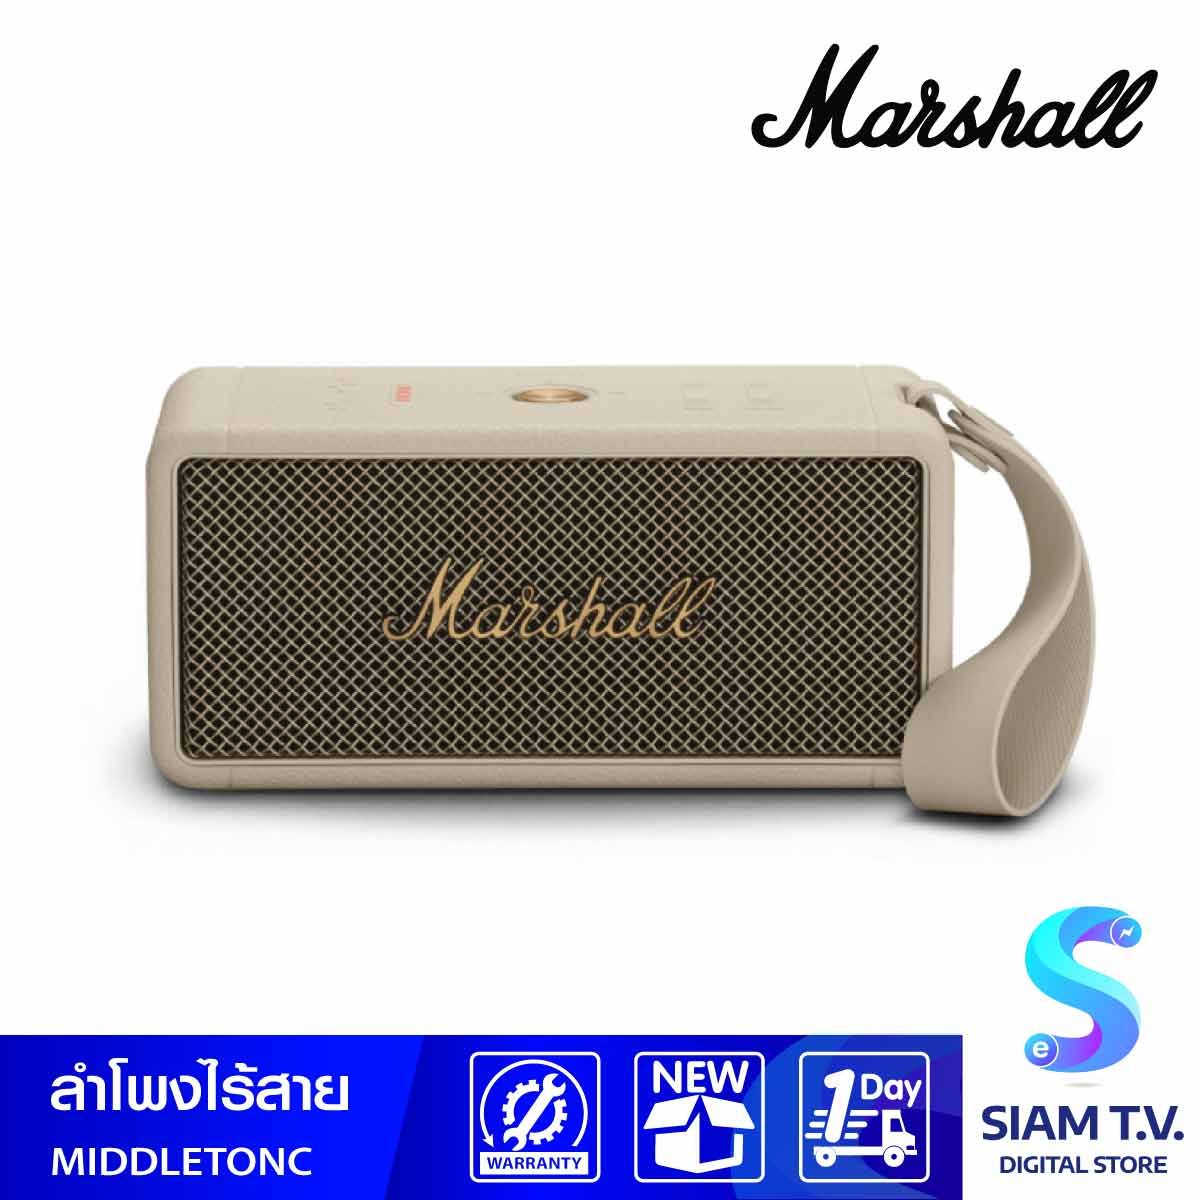 MARSHALL  ลำโพงไร้สาย Bluetooth Speaker รุ่น Middleton  Bluetooth Speaker